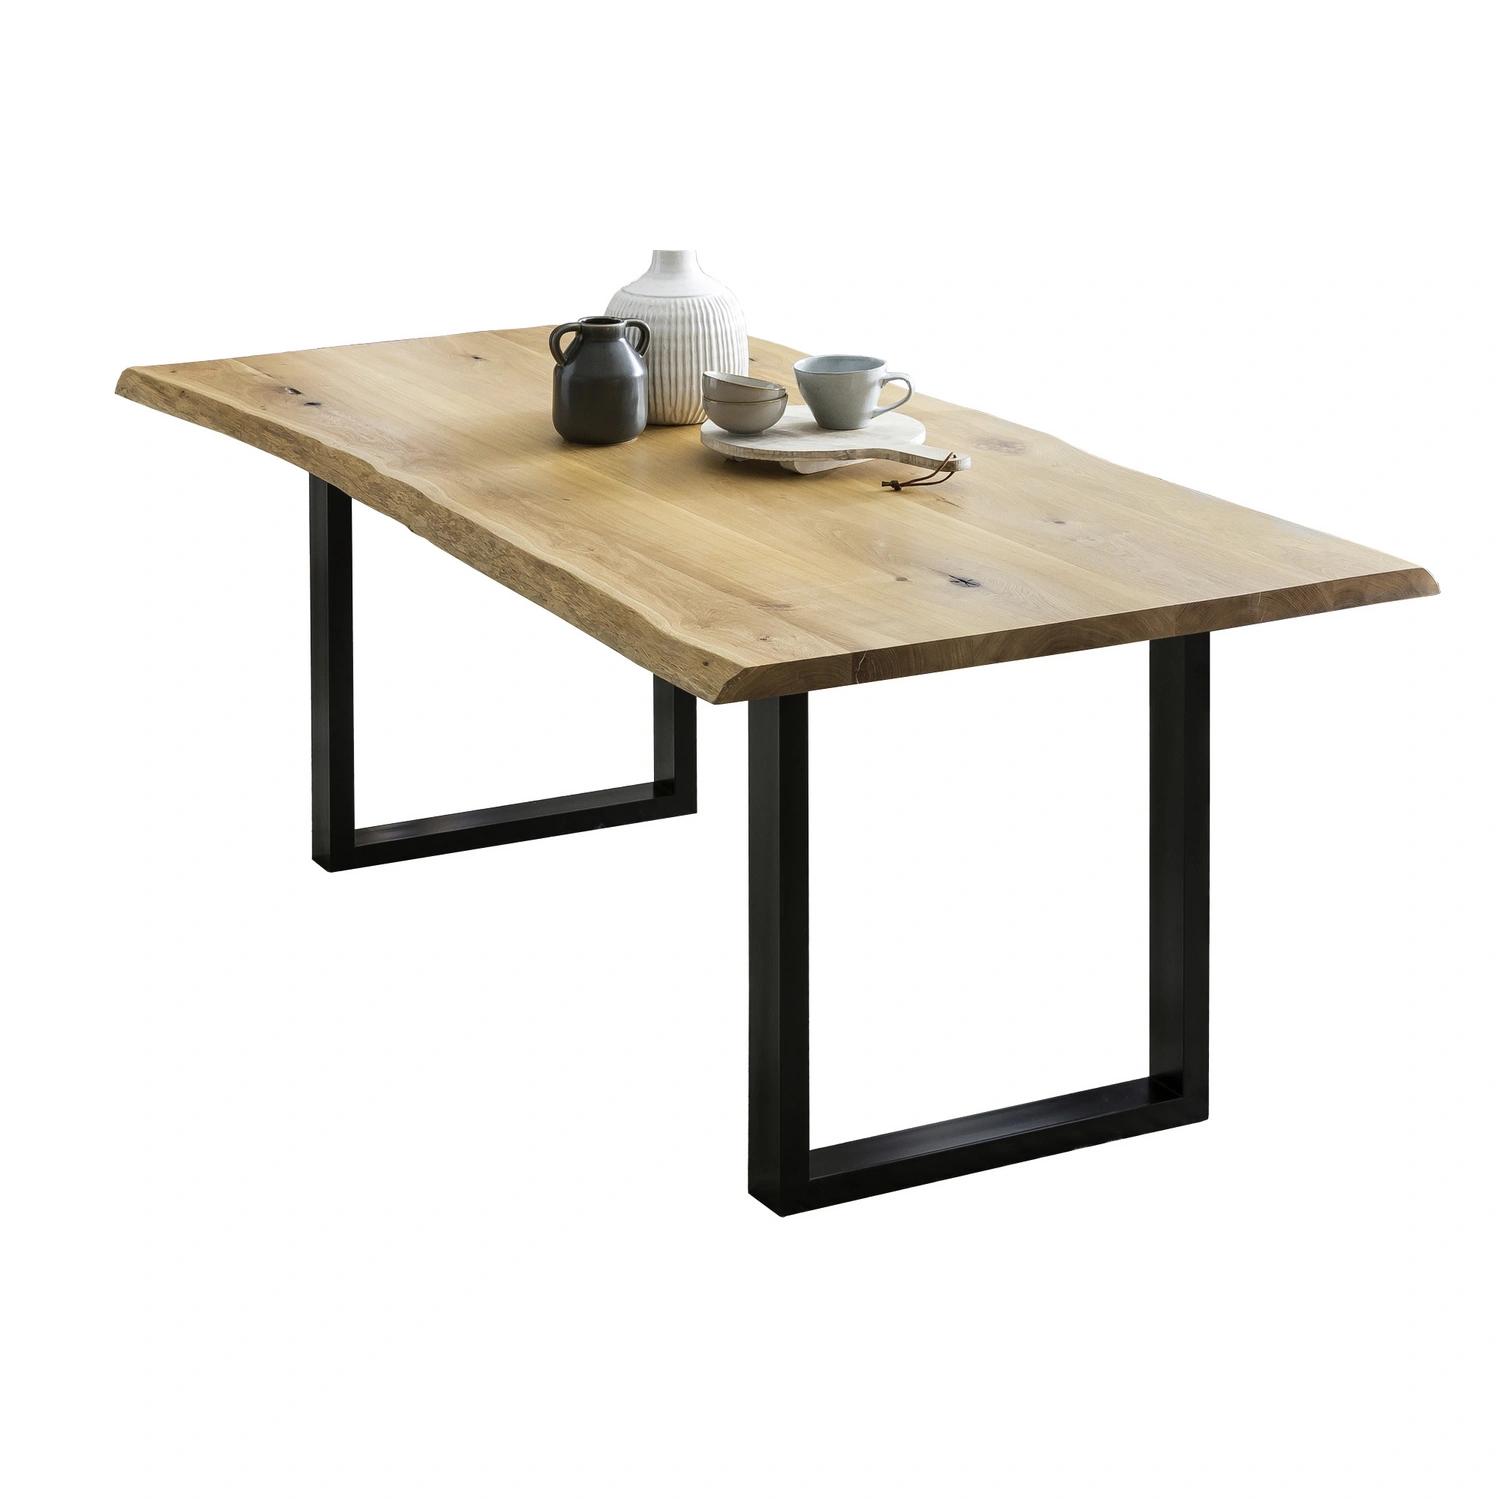 SalesFever Esstisch »Tisch«, BxT: 206 x 100 cm, metall|holz